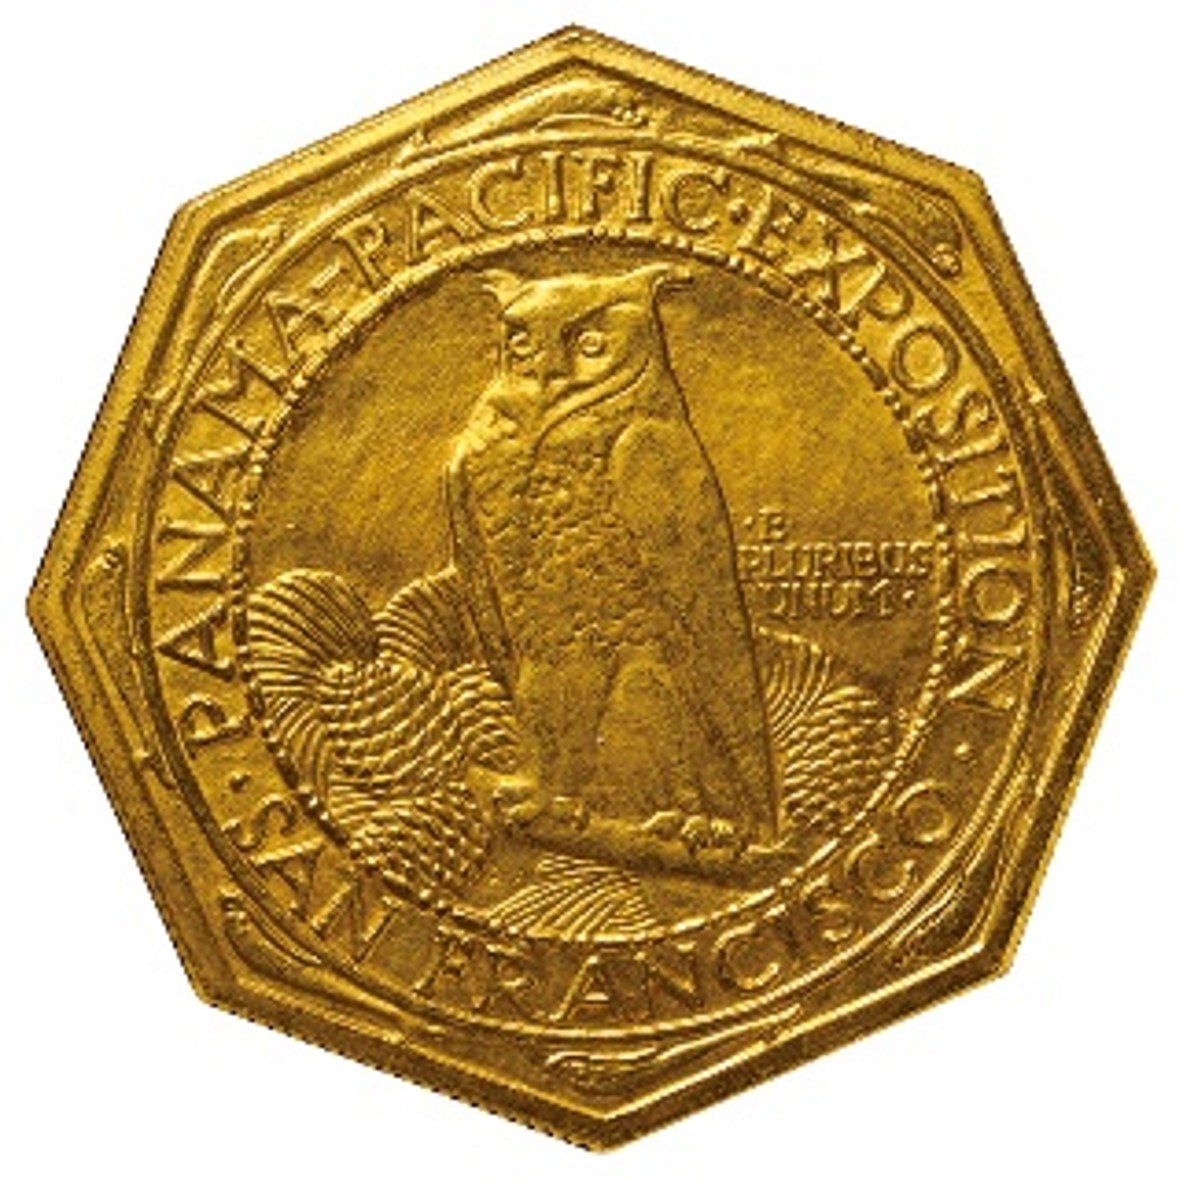 アメリカ 50ドル金貨 1915S パナマパシフィック博覧会 八角形タイプ Fr189 KM139 NGC MS63 (UNC) | コイン